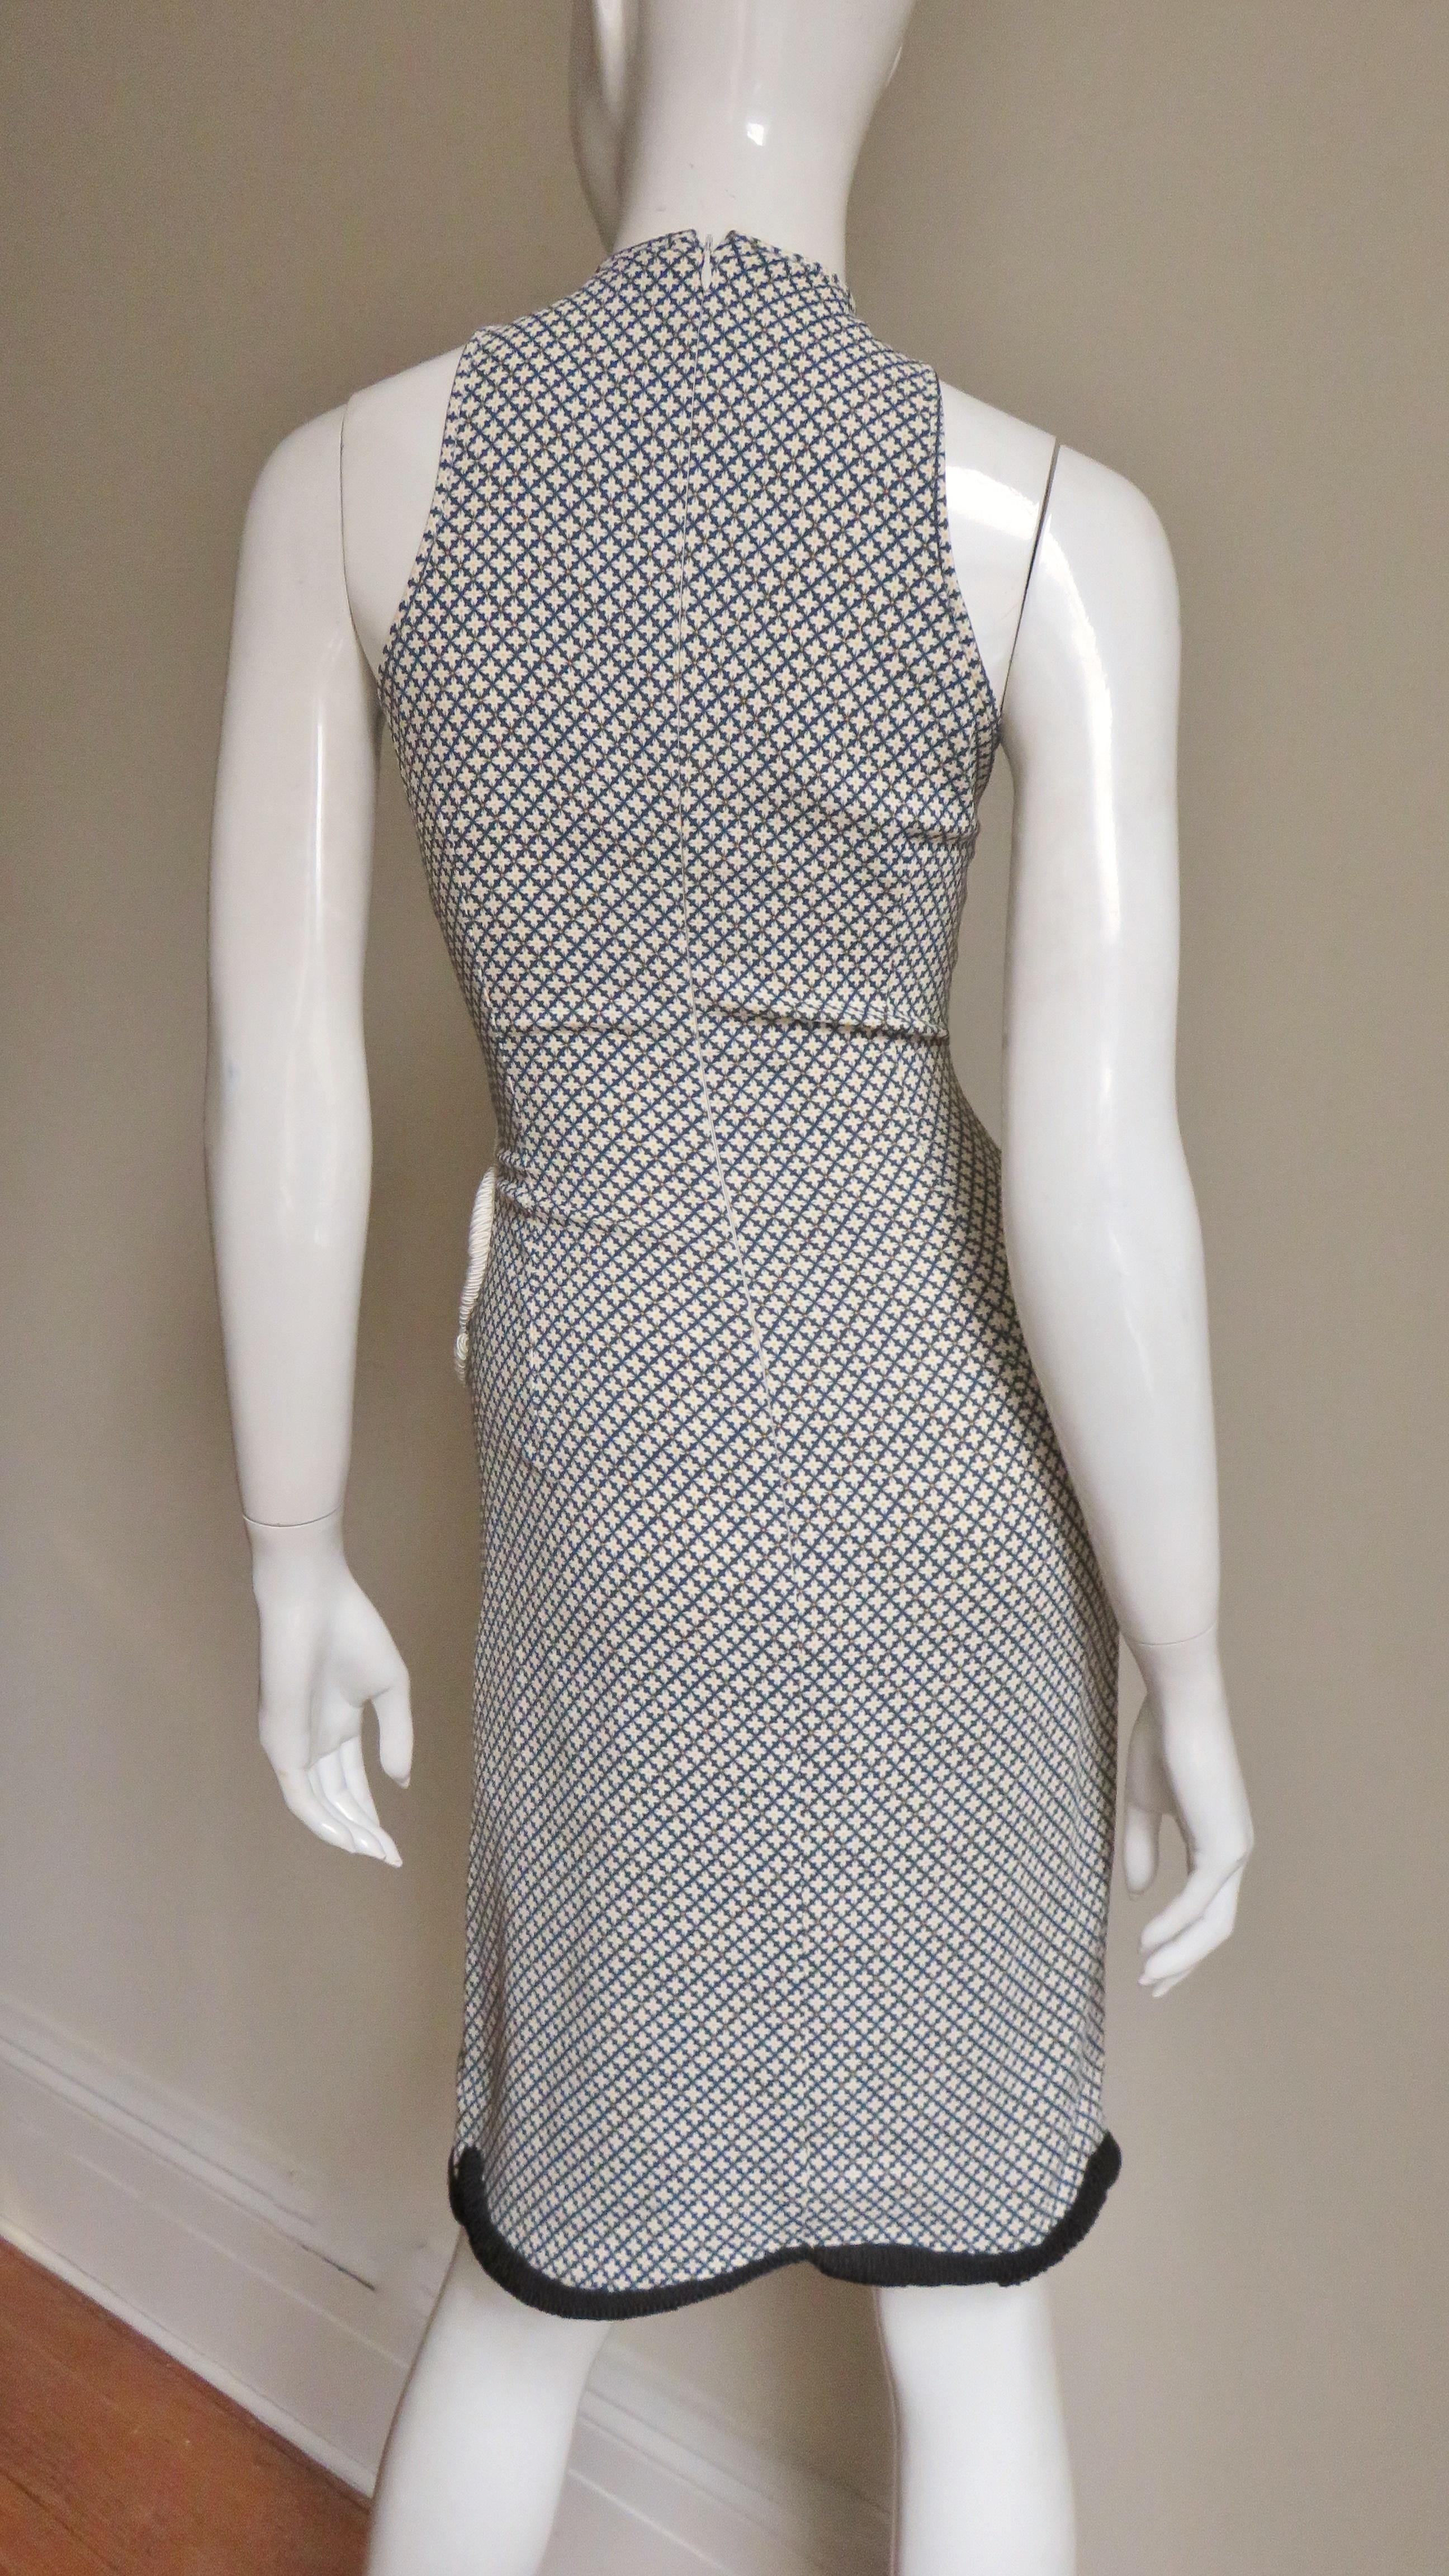 Stella McCartney Neues Kleid mit gemischten Mustern für die Anzeigenkampagne 8